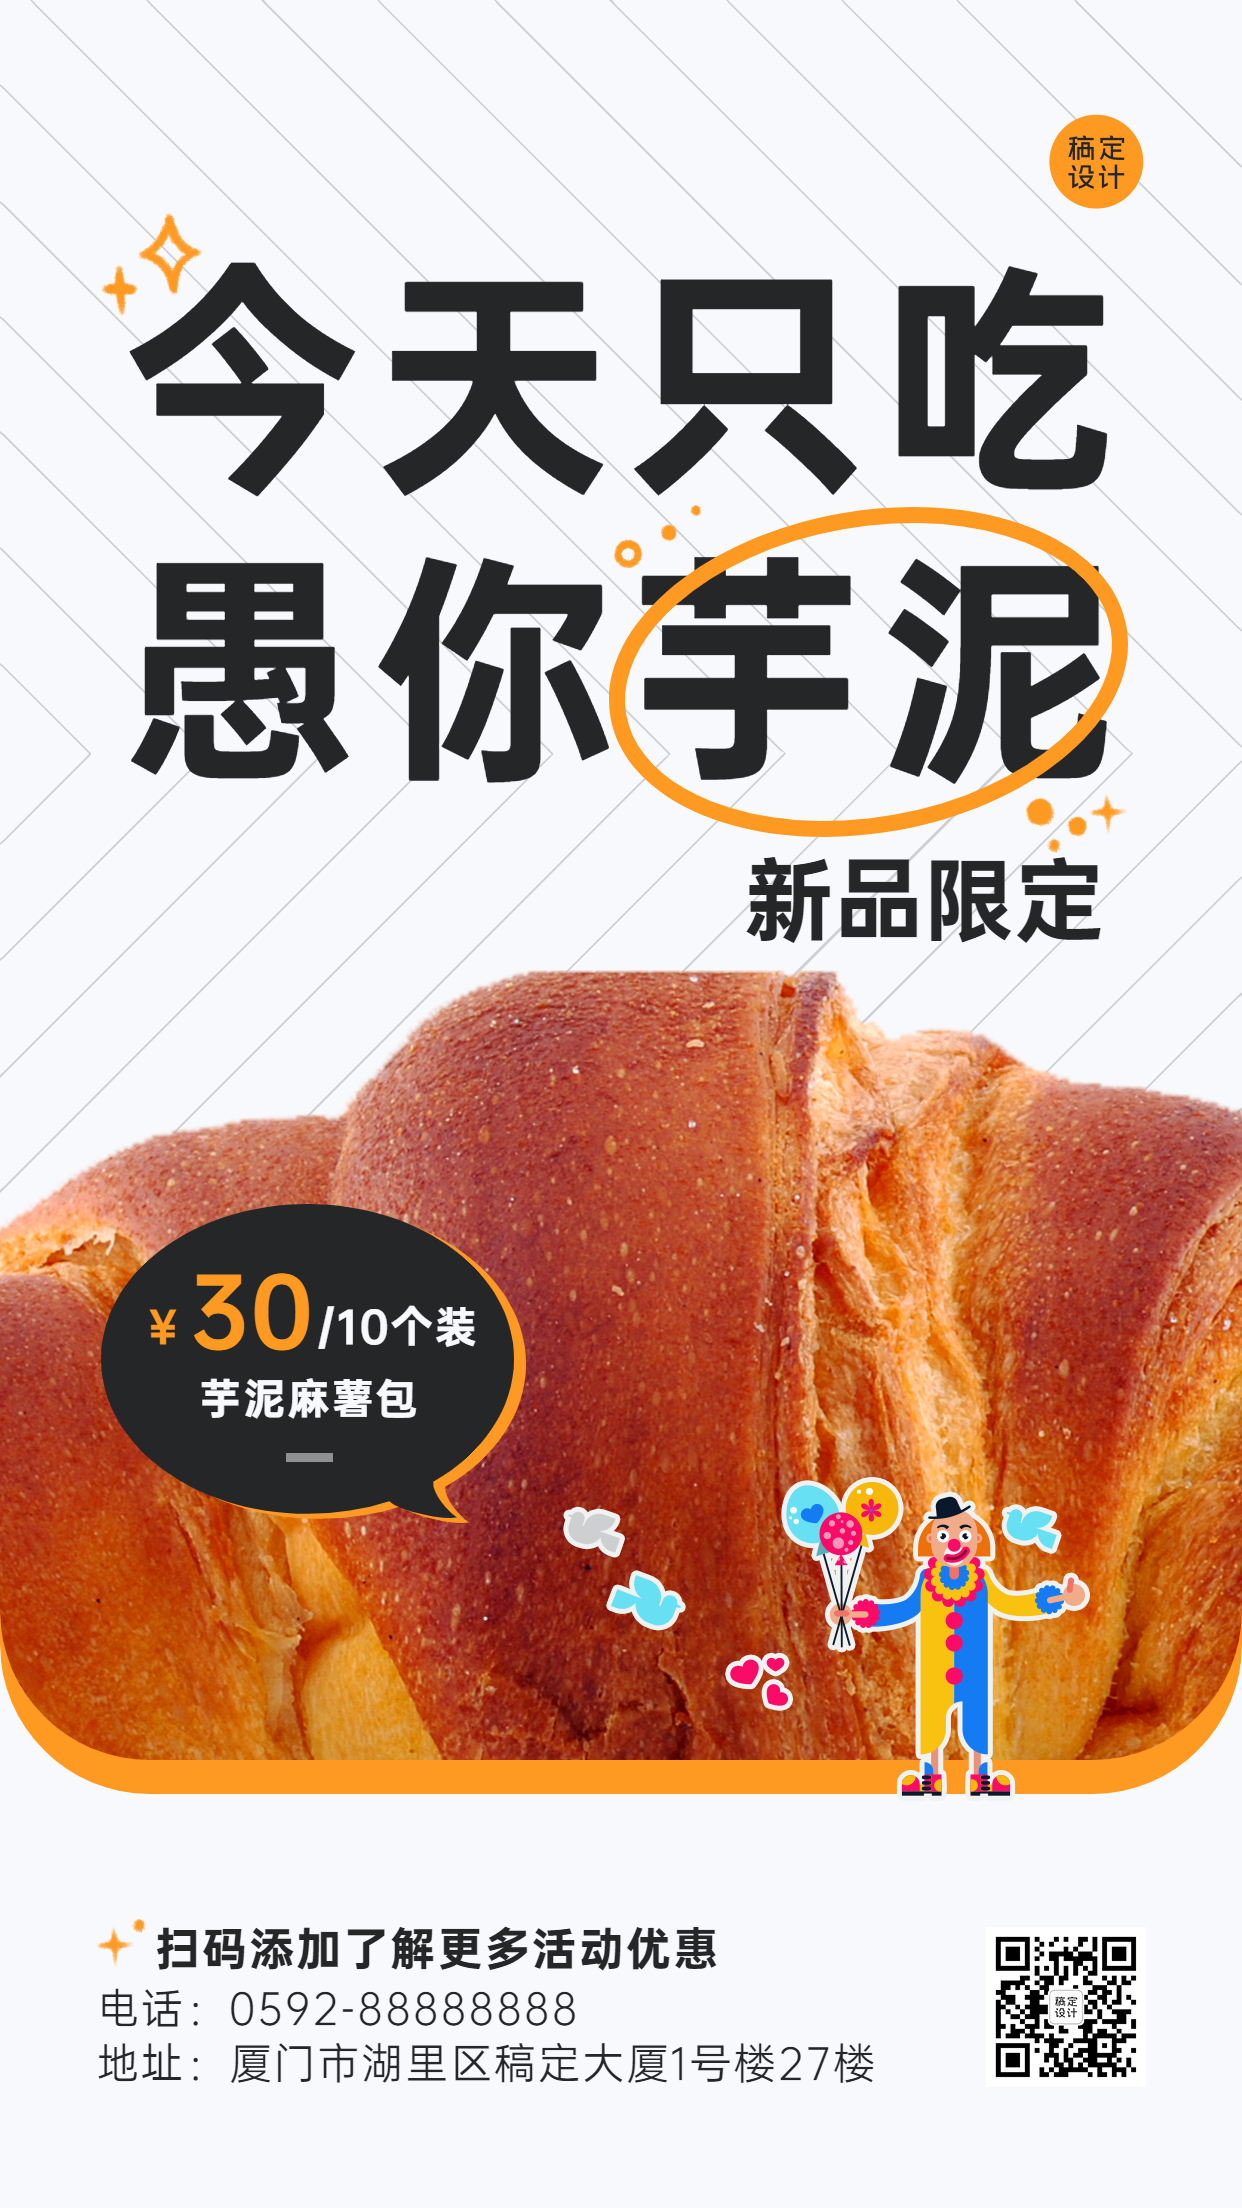 愚人节面包烘焙产品营销餐饮手机海报